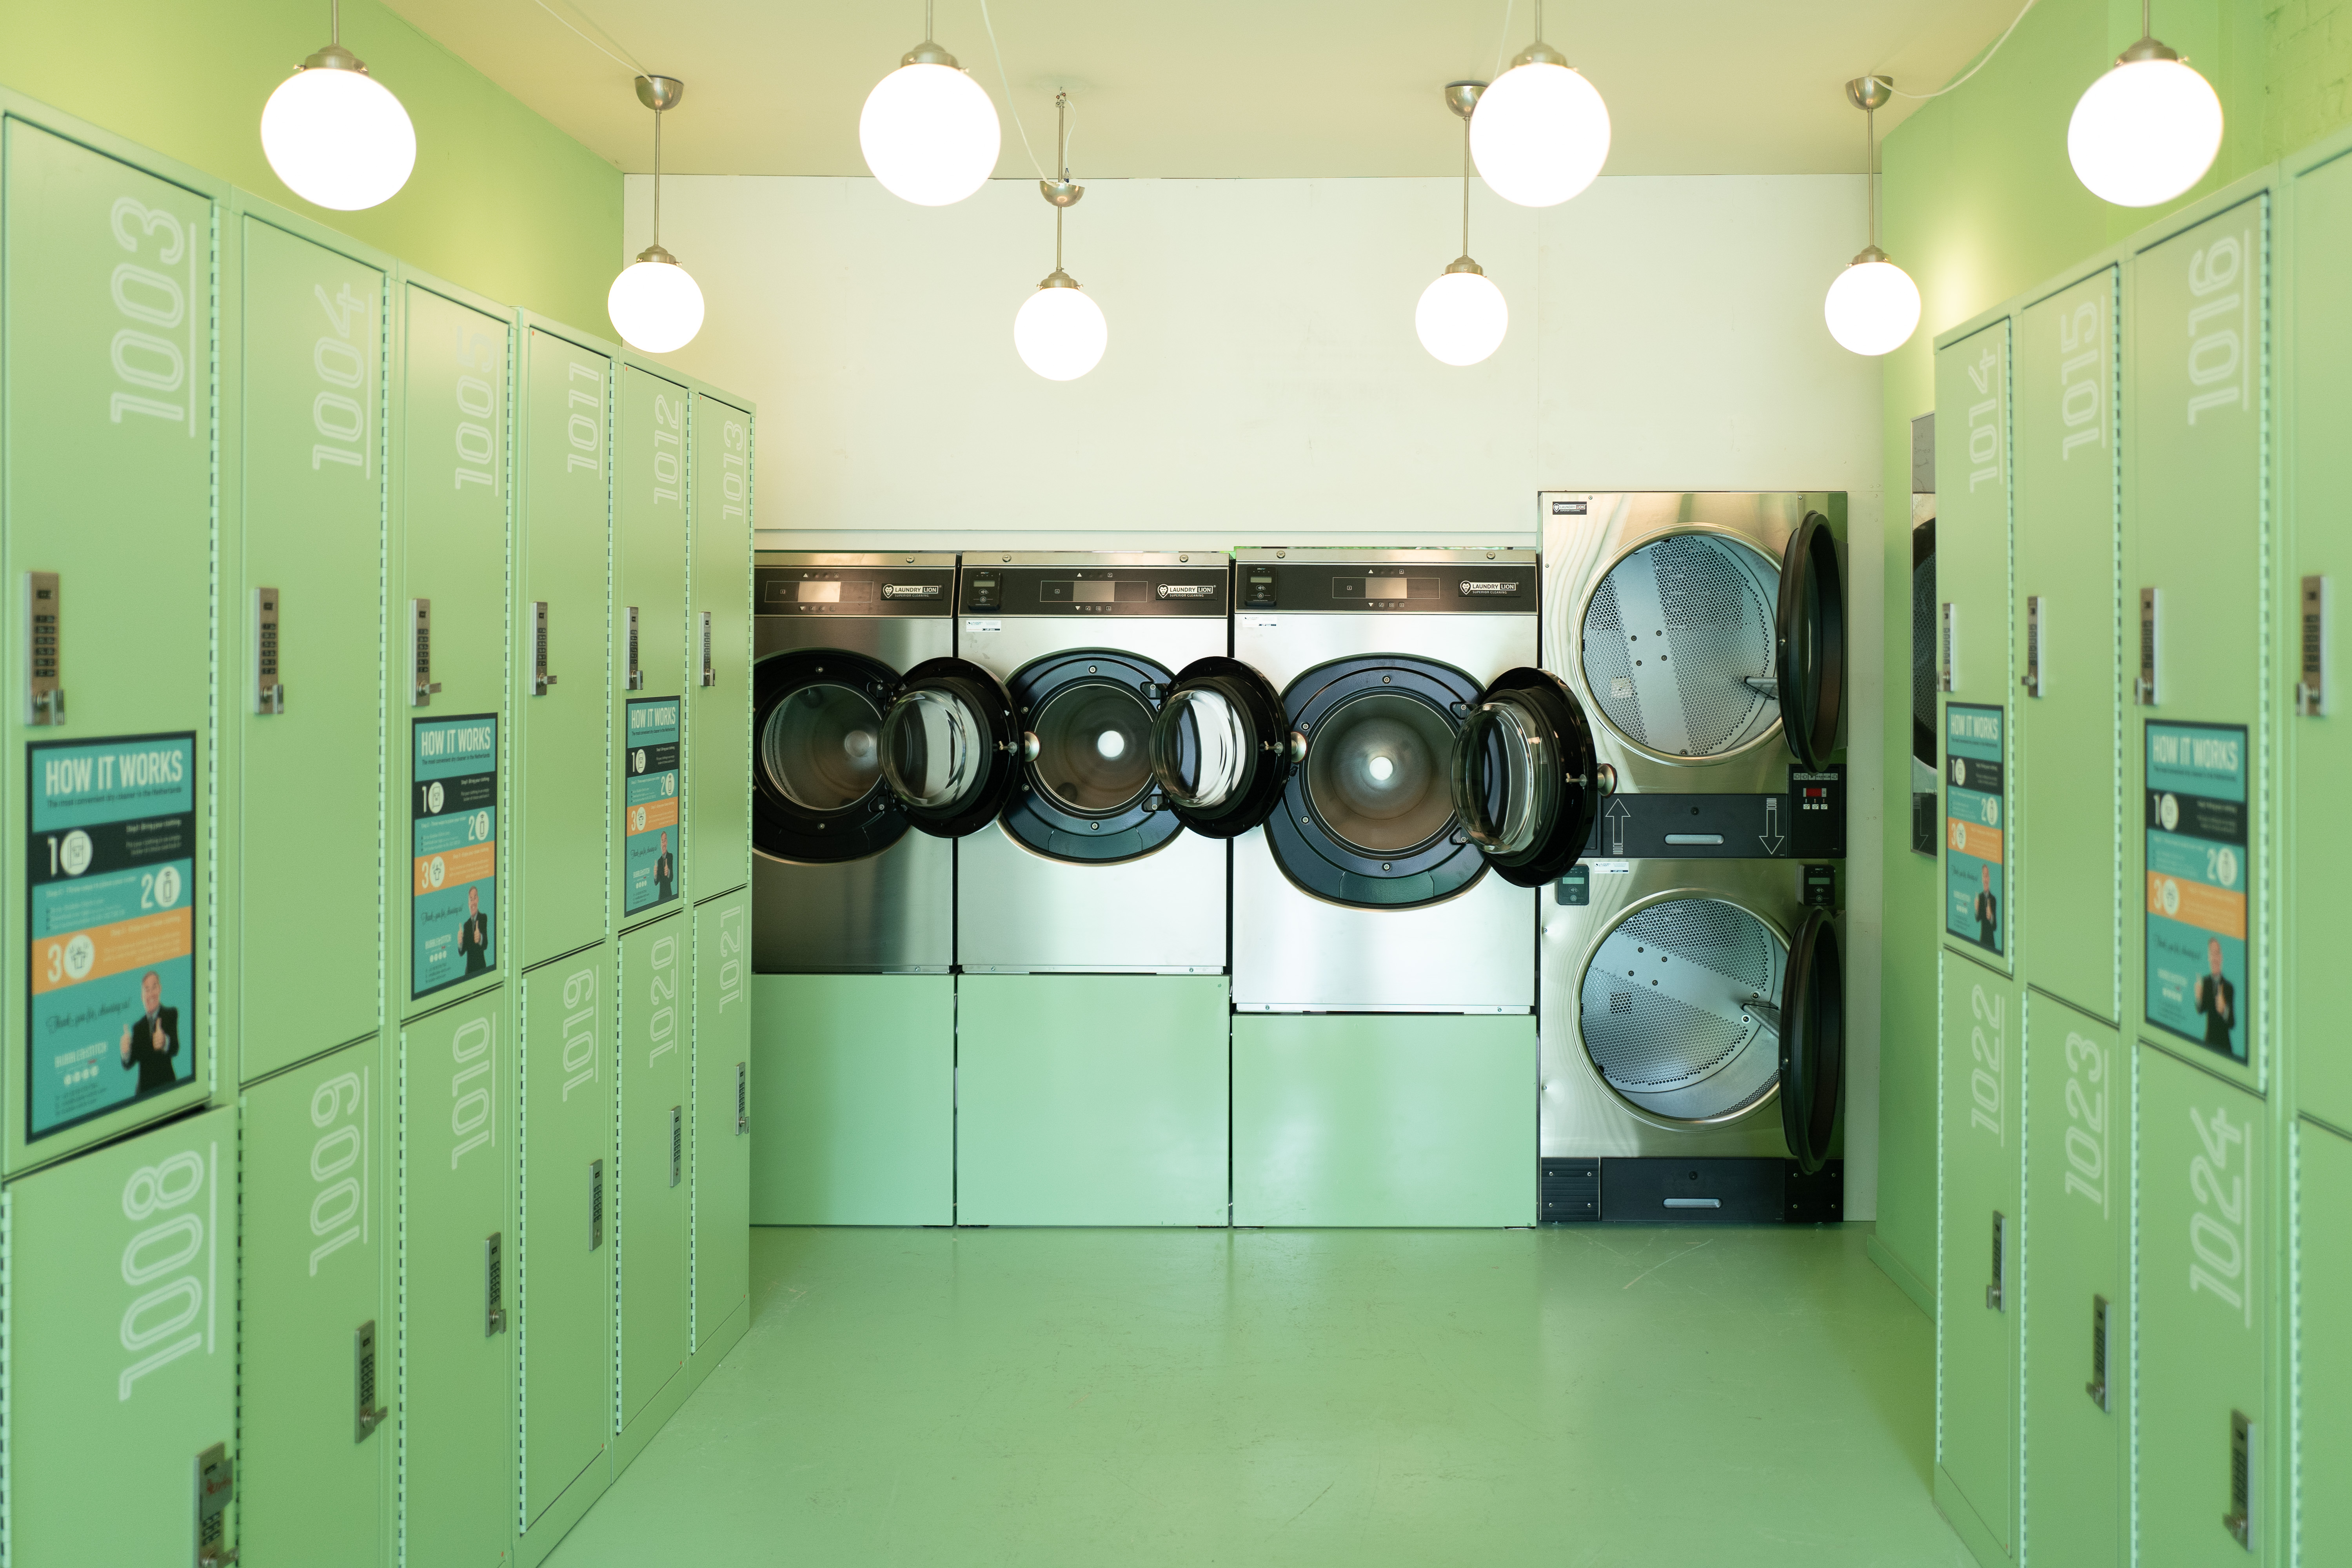 Moderne wasserette van Bubble&Stitch in Amsterdam met hypermoderne wasmachines en lockers